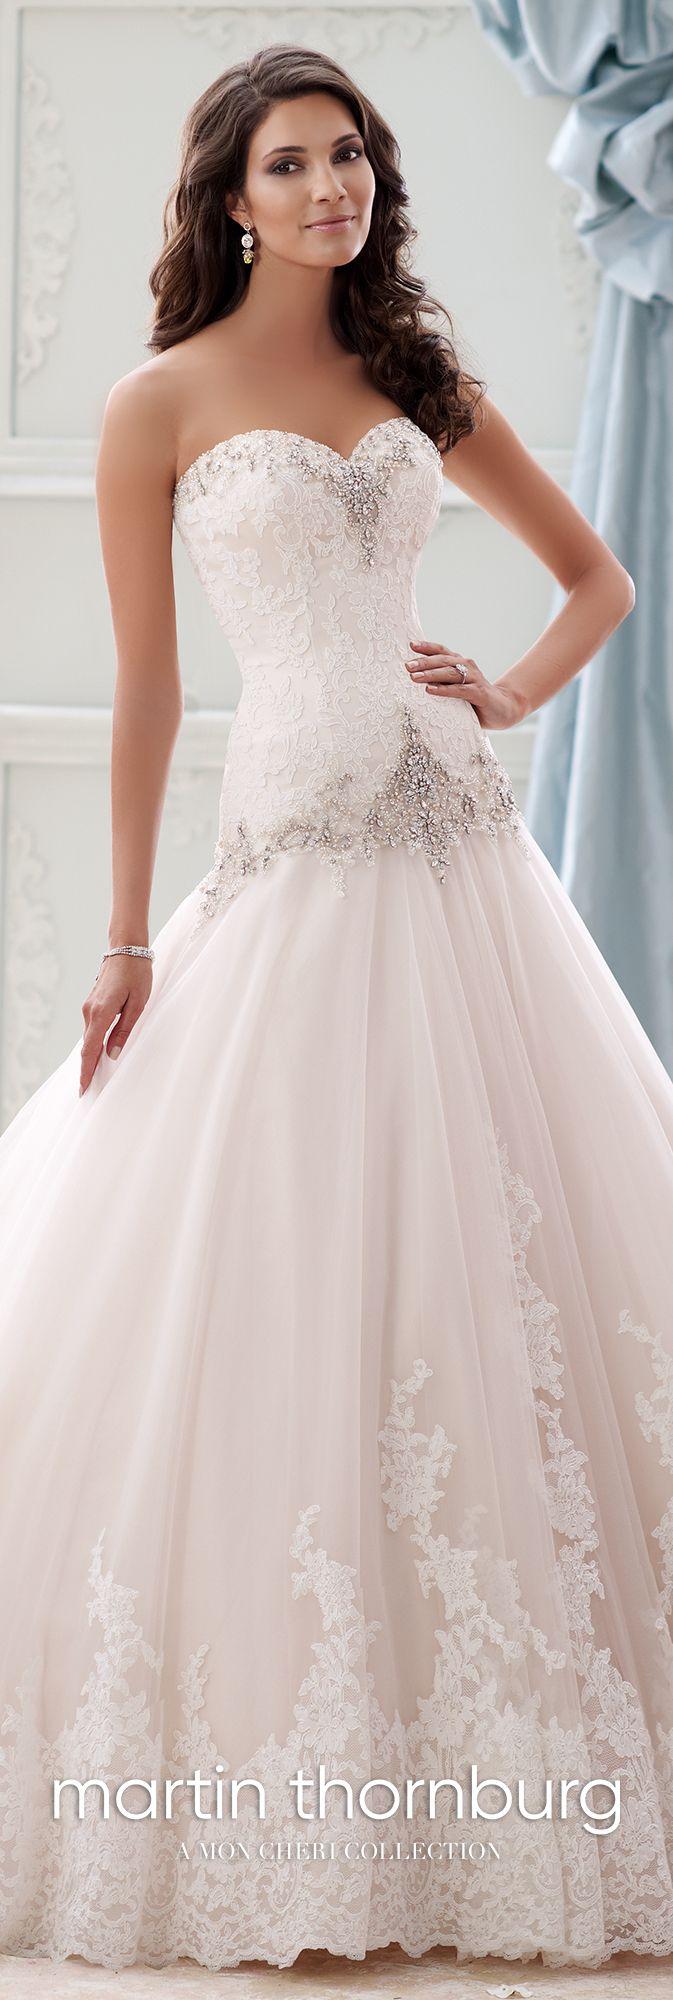 Mariage - Beaded Dropped-Waist Taffeta Ball Gown Wedding Dress- 115228 Ocean